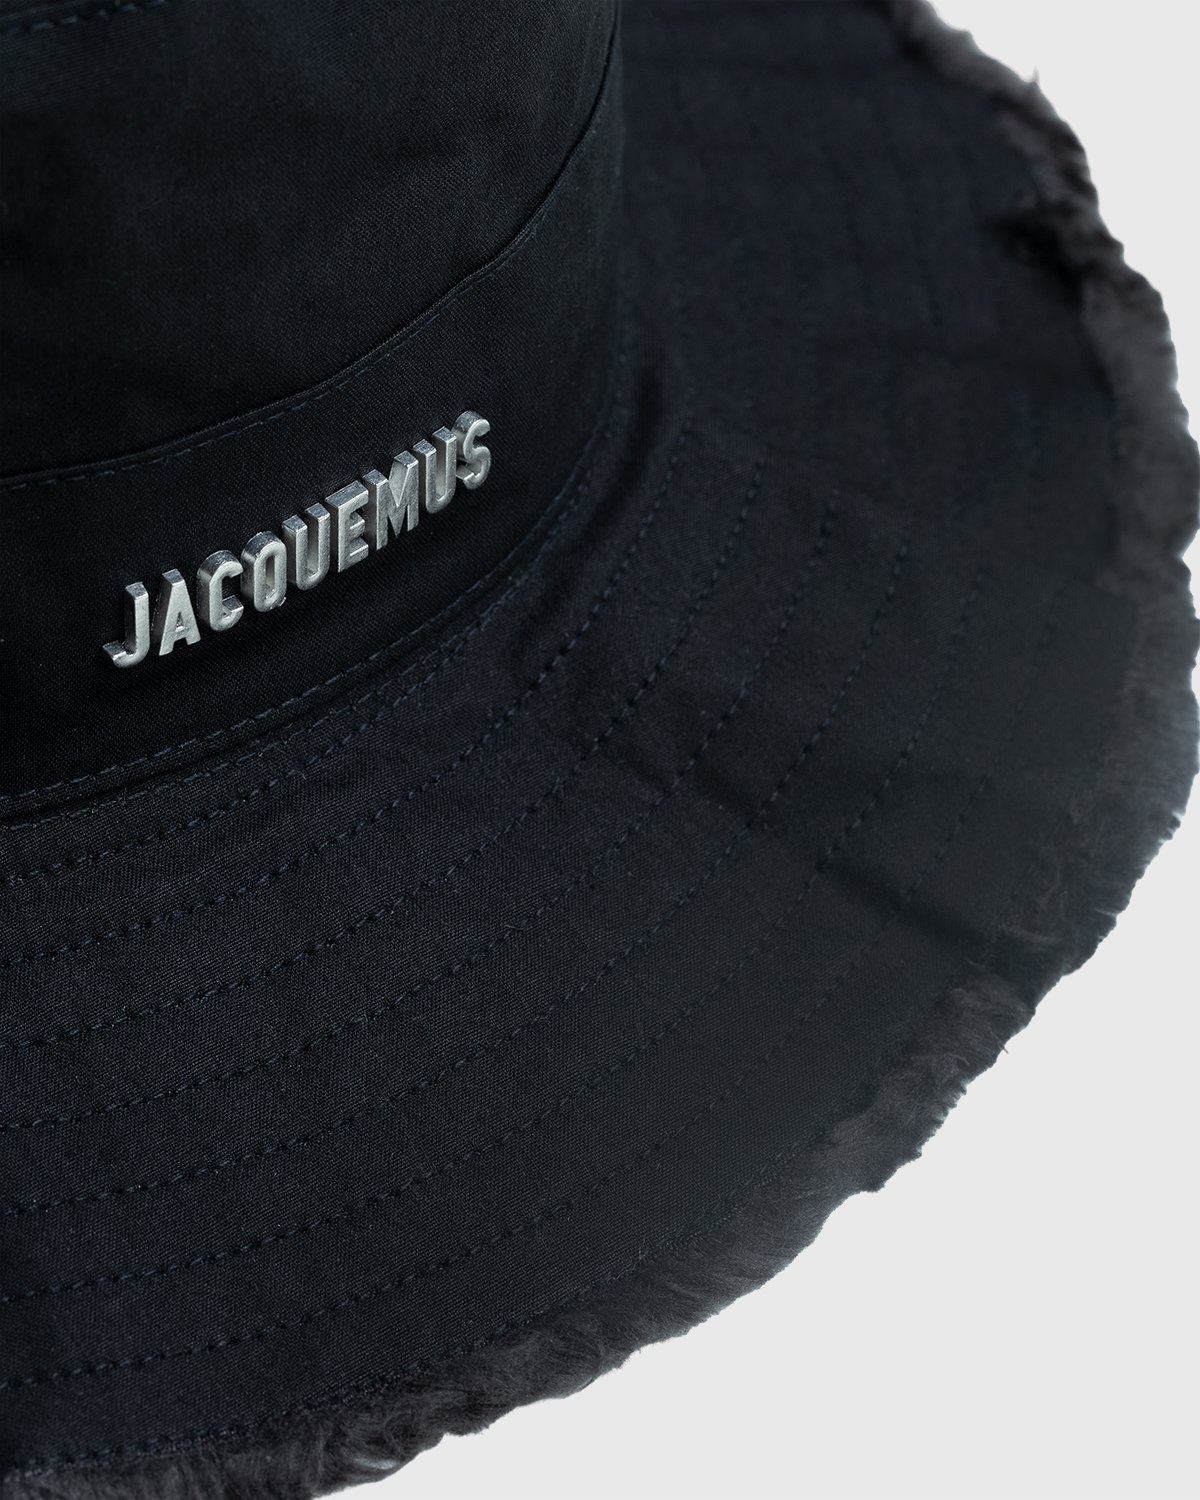 JACQUEMUS – Le Bob Artichaut Black - Hats - Black - Image 4